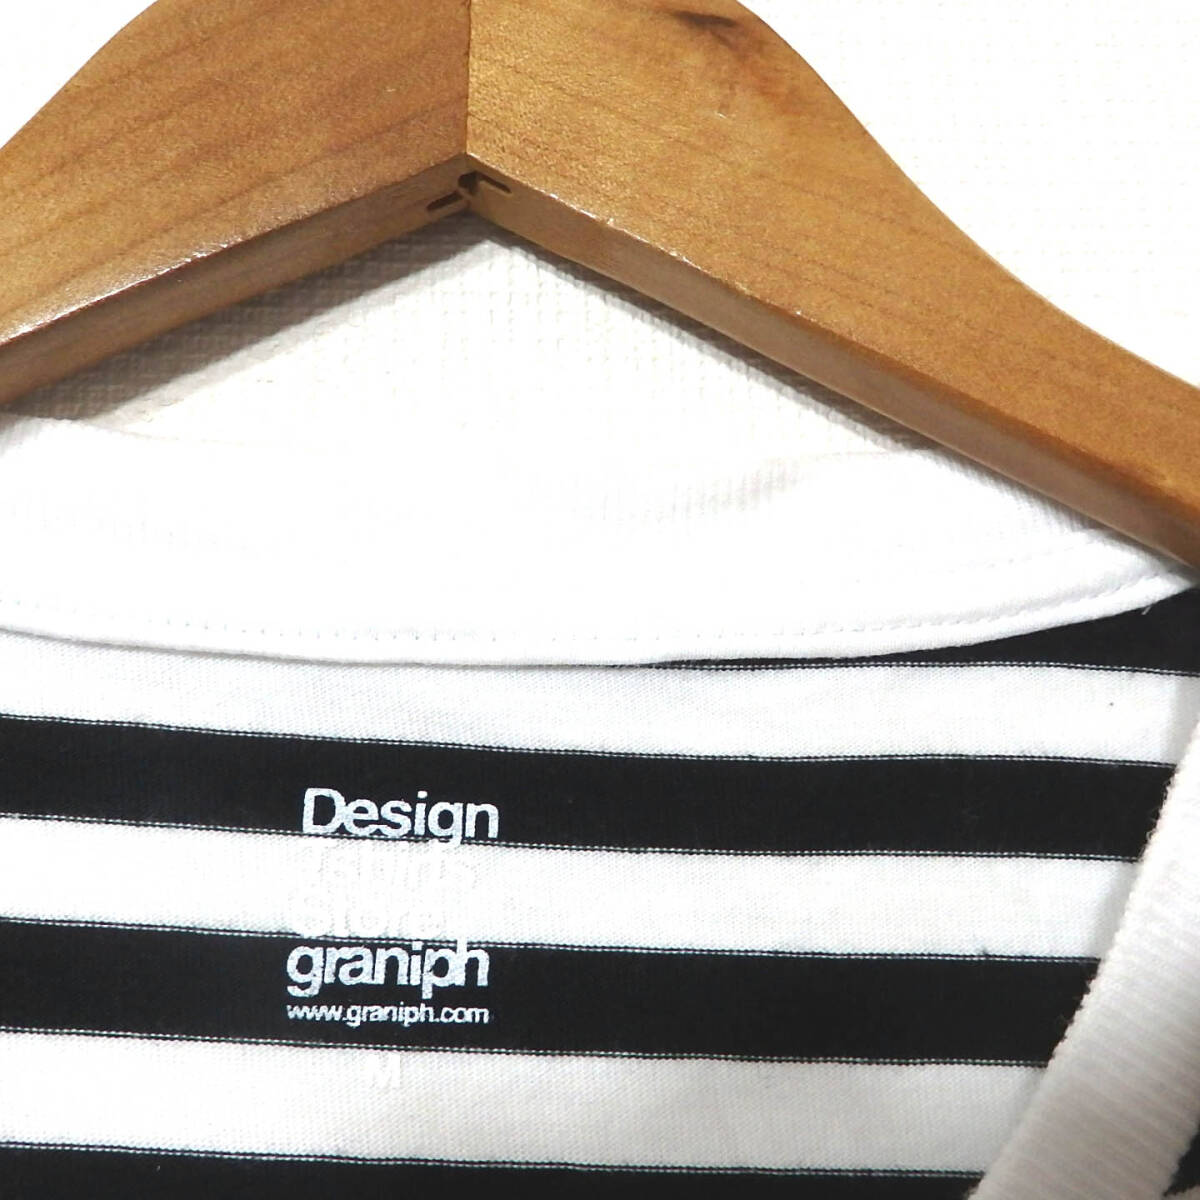 【送料無料】グラニフ×はらぺこあおむしTシャツ/Mサイズ ボーダー エリックカール Design Tshirts Store graniphの画像4